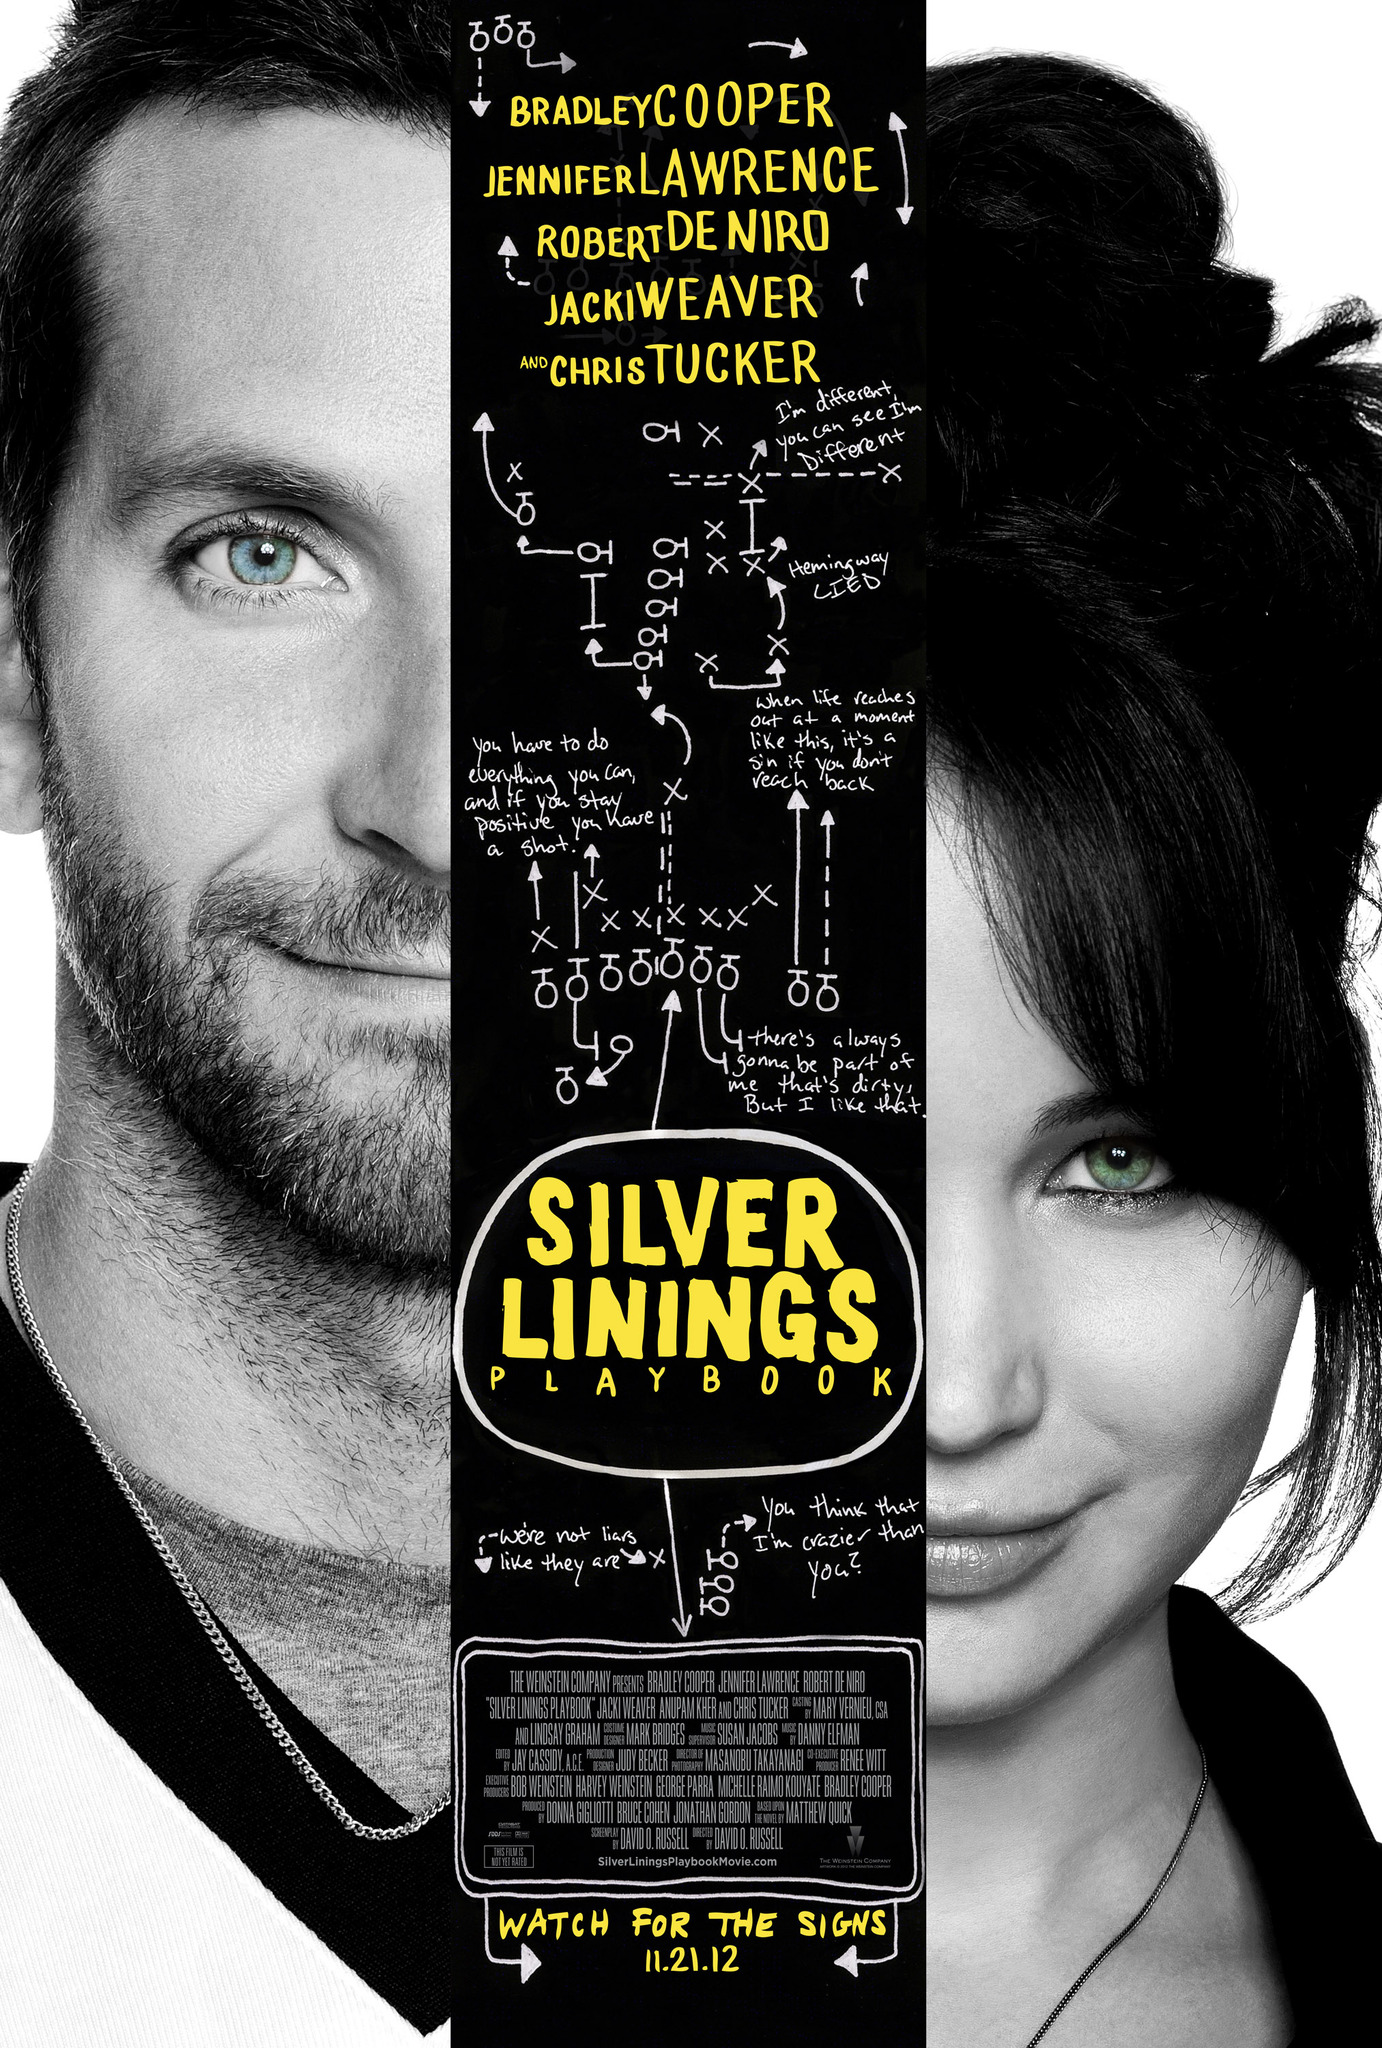 Bradley Cooper and Jennifer Lawrence in Optimisto istorija (2012)